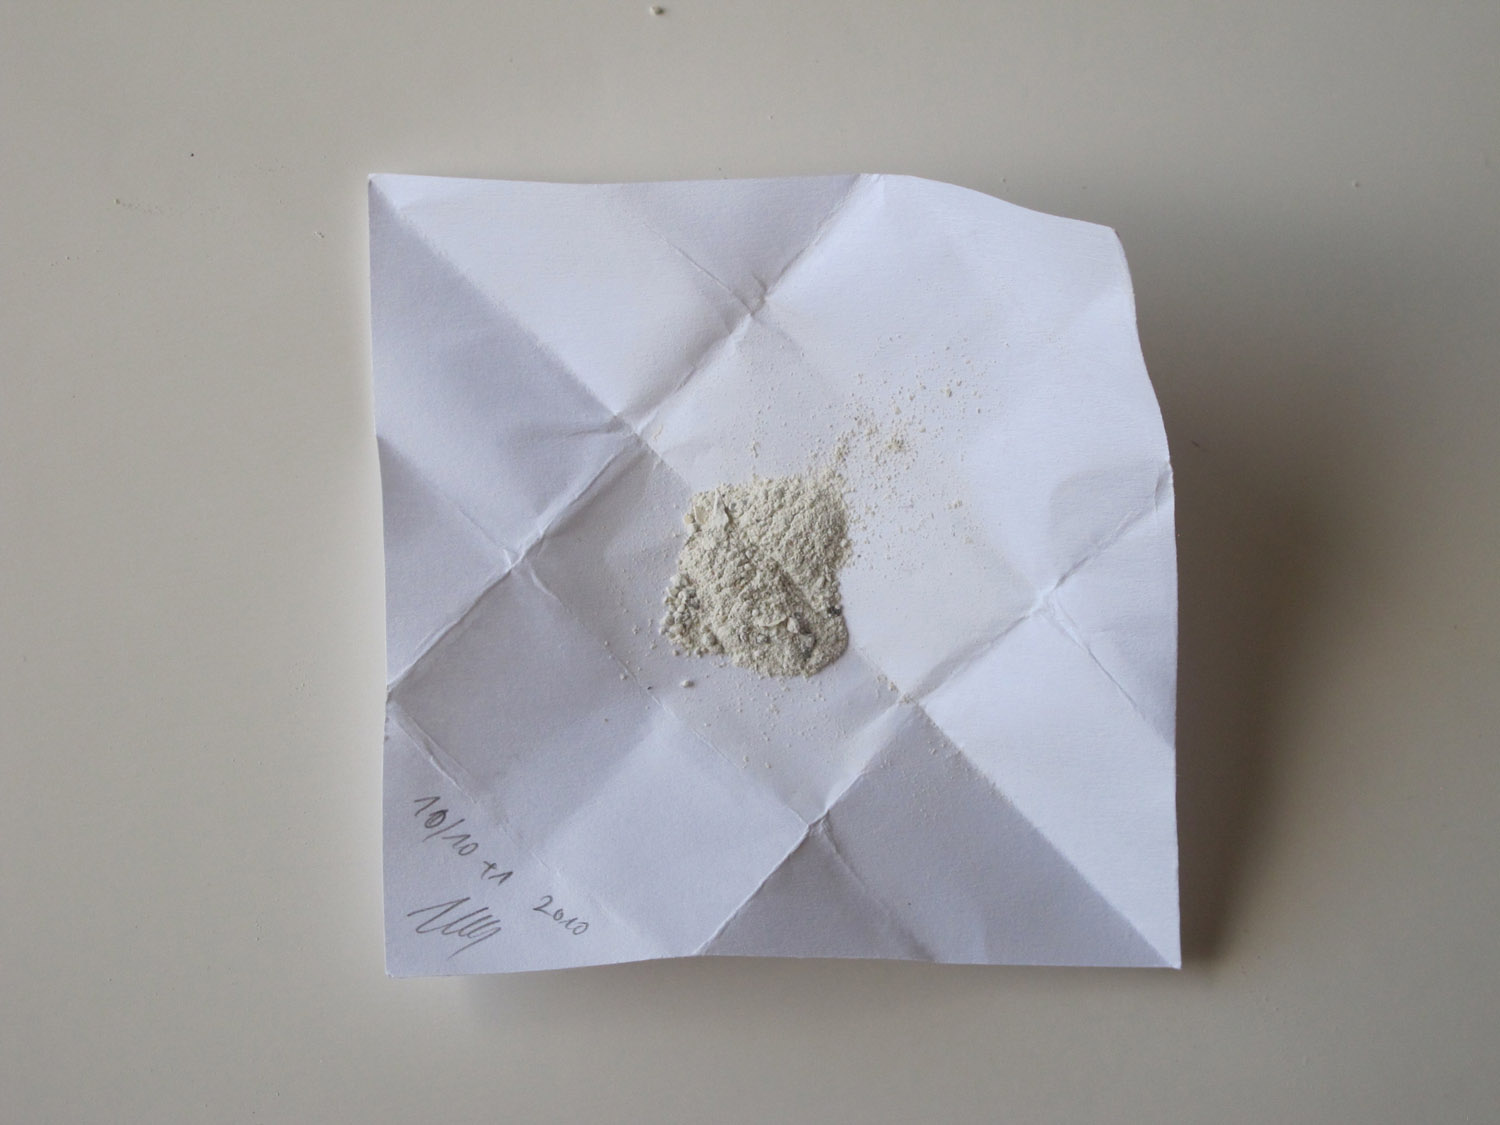 DAN, DAN, 2010. Five paper bags: 1 cm x 3 cm, white powder, plastic bag.